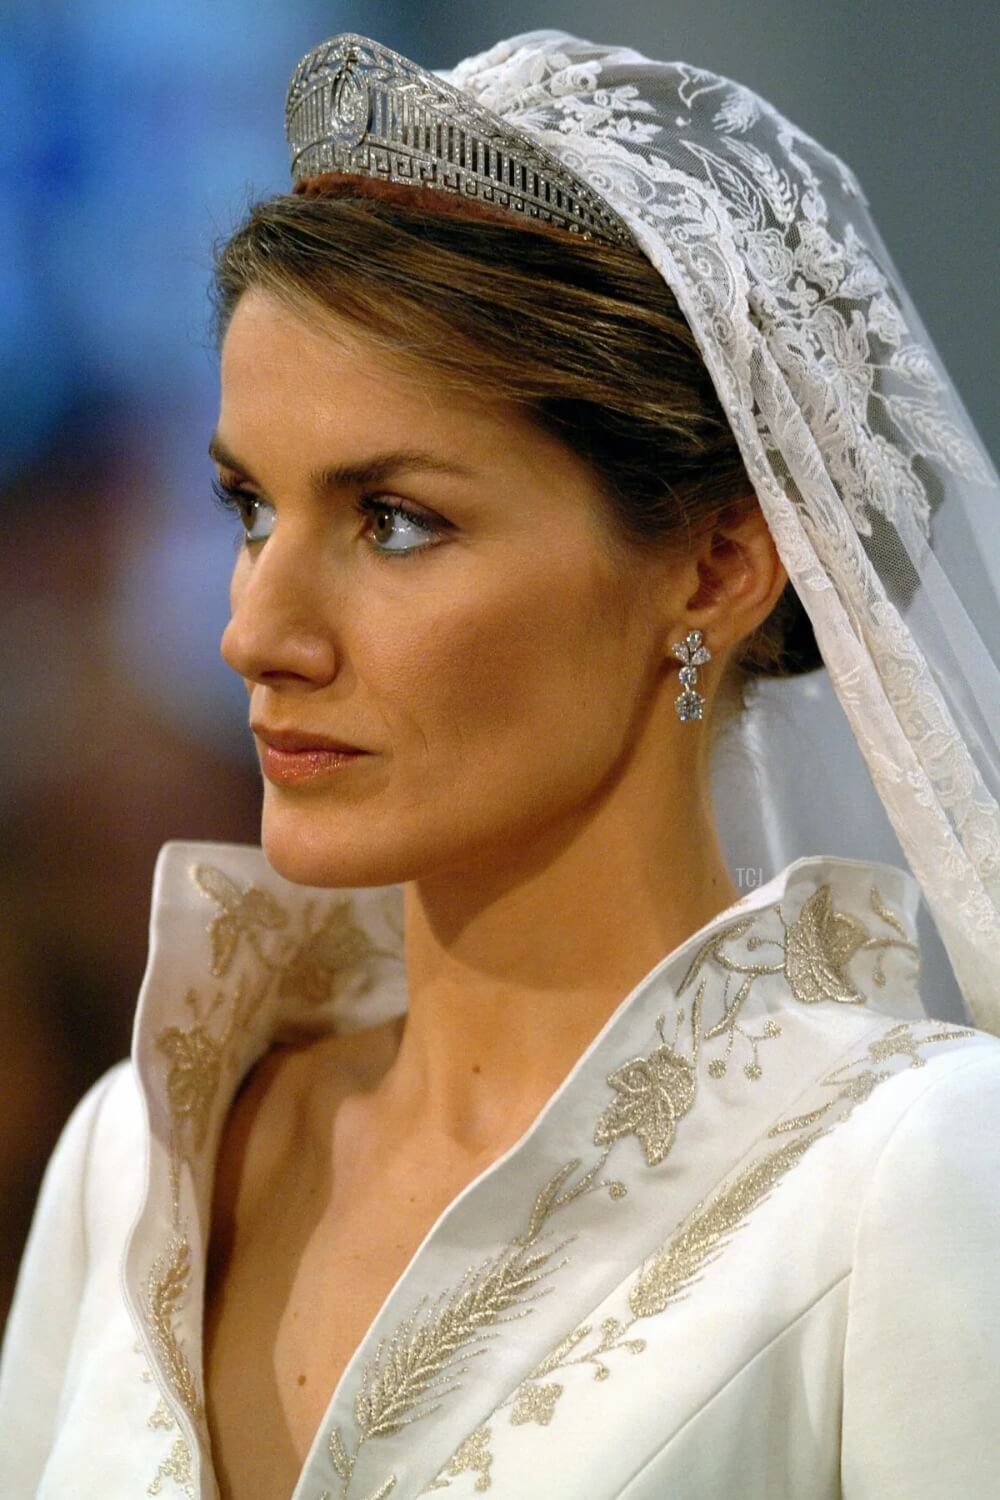 Close-up of Queen Letizia wedding tiara